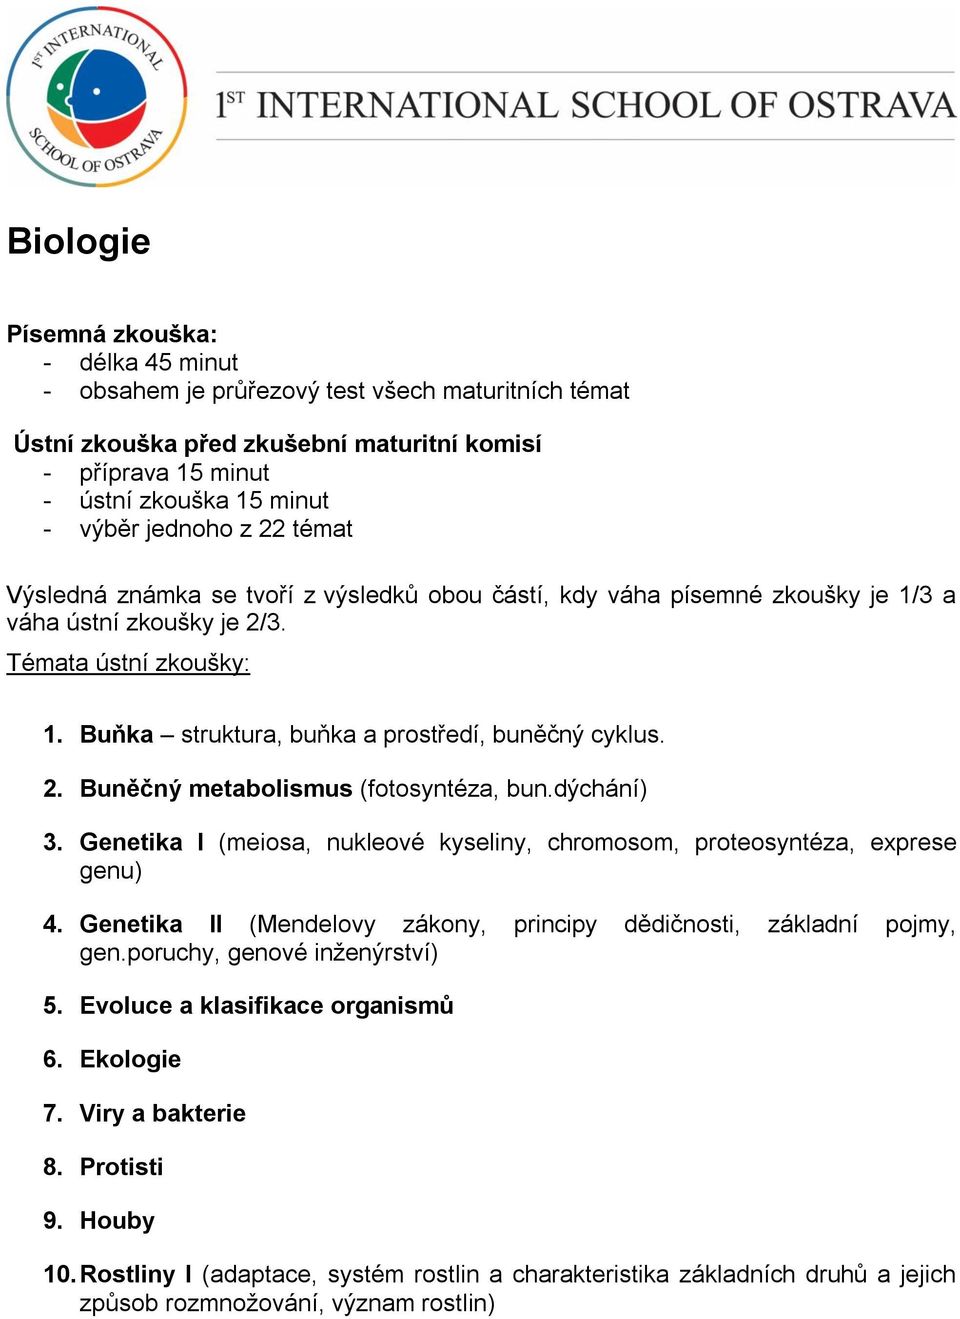 Buňka struktura, buňka a prostředí, buněčný cyklus. 2. Buněčný metabolismus (fotosyntéza, bun.dýchání) 3. Genetika I (meiosa, nukleové kyseliny, chromosom, proteosyntéza, exprese genu) 4.